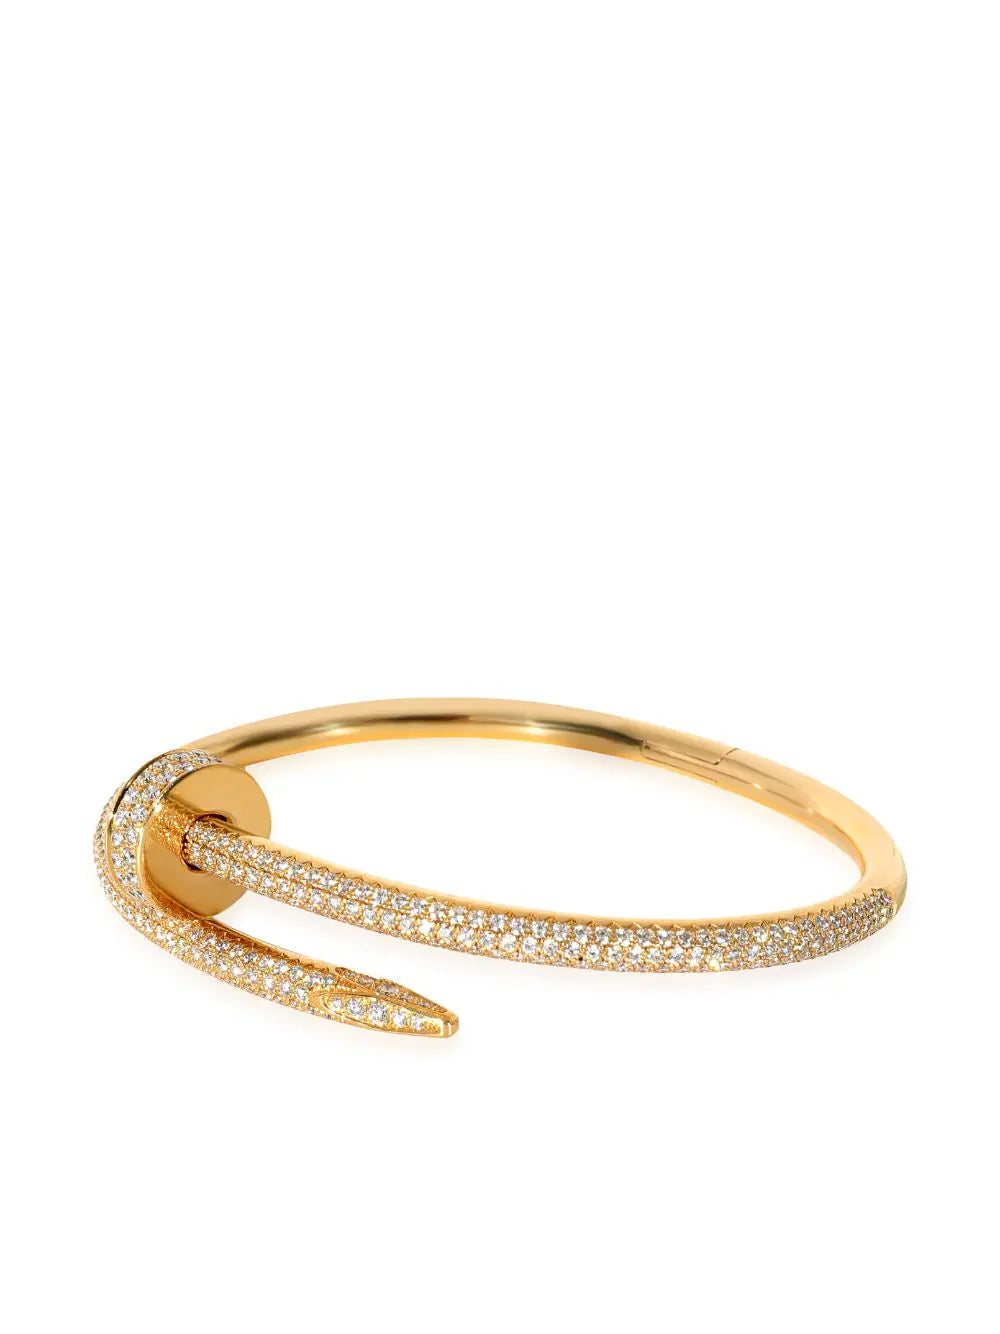 Cartier Juste Un Clou Bracelet Rose Gold Diamonds 16